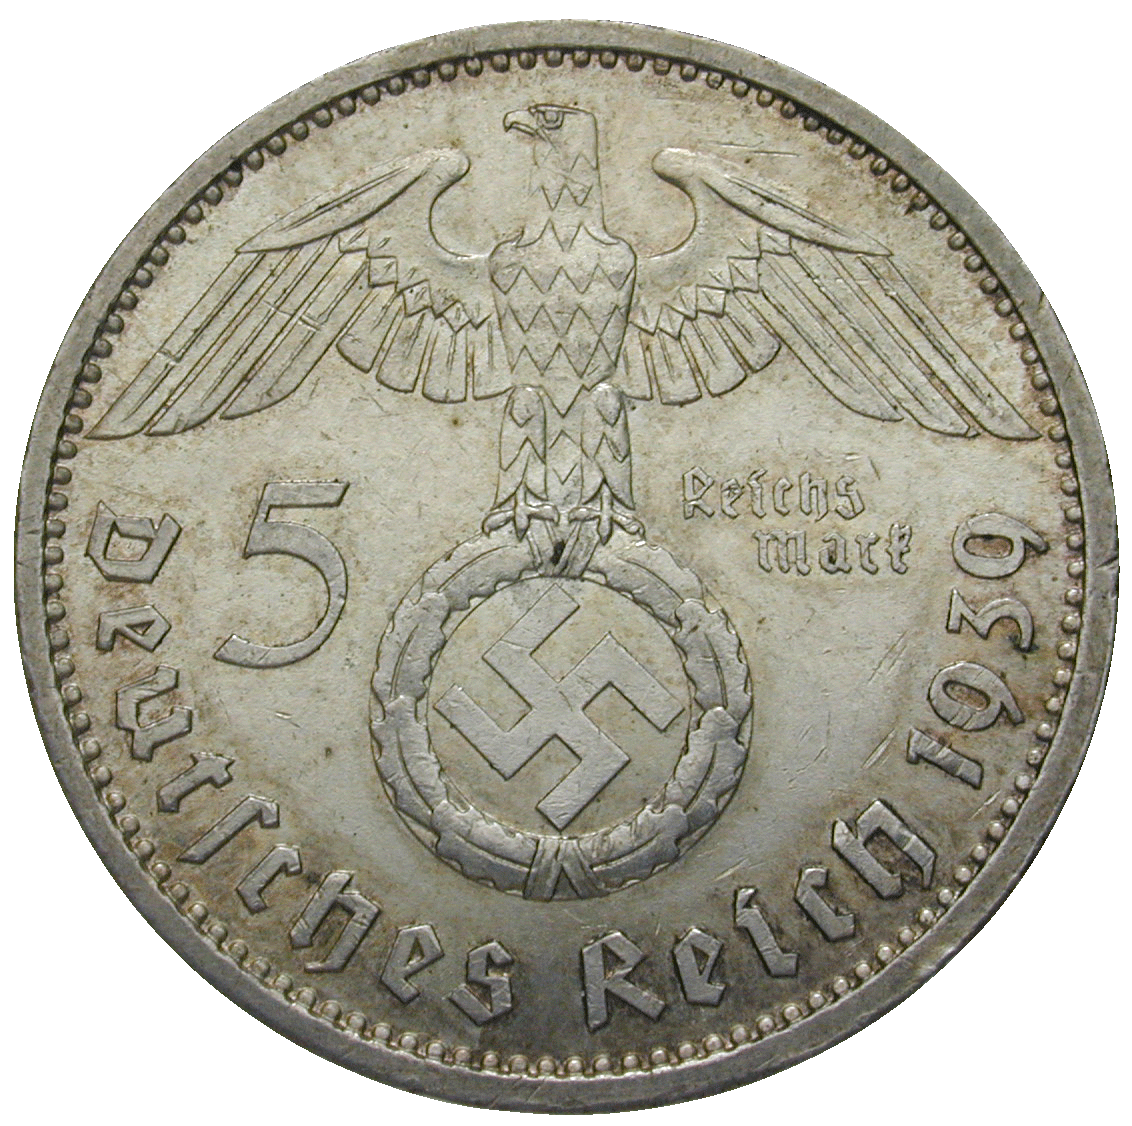 German Third Empire, 5 Reichsmark 1939 (obverse)